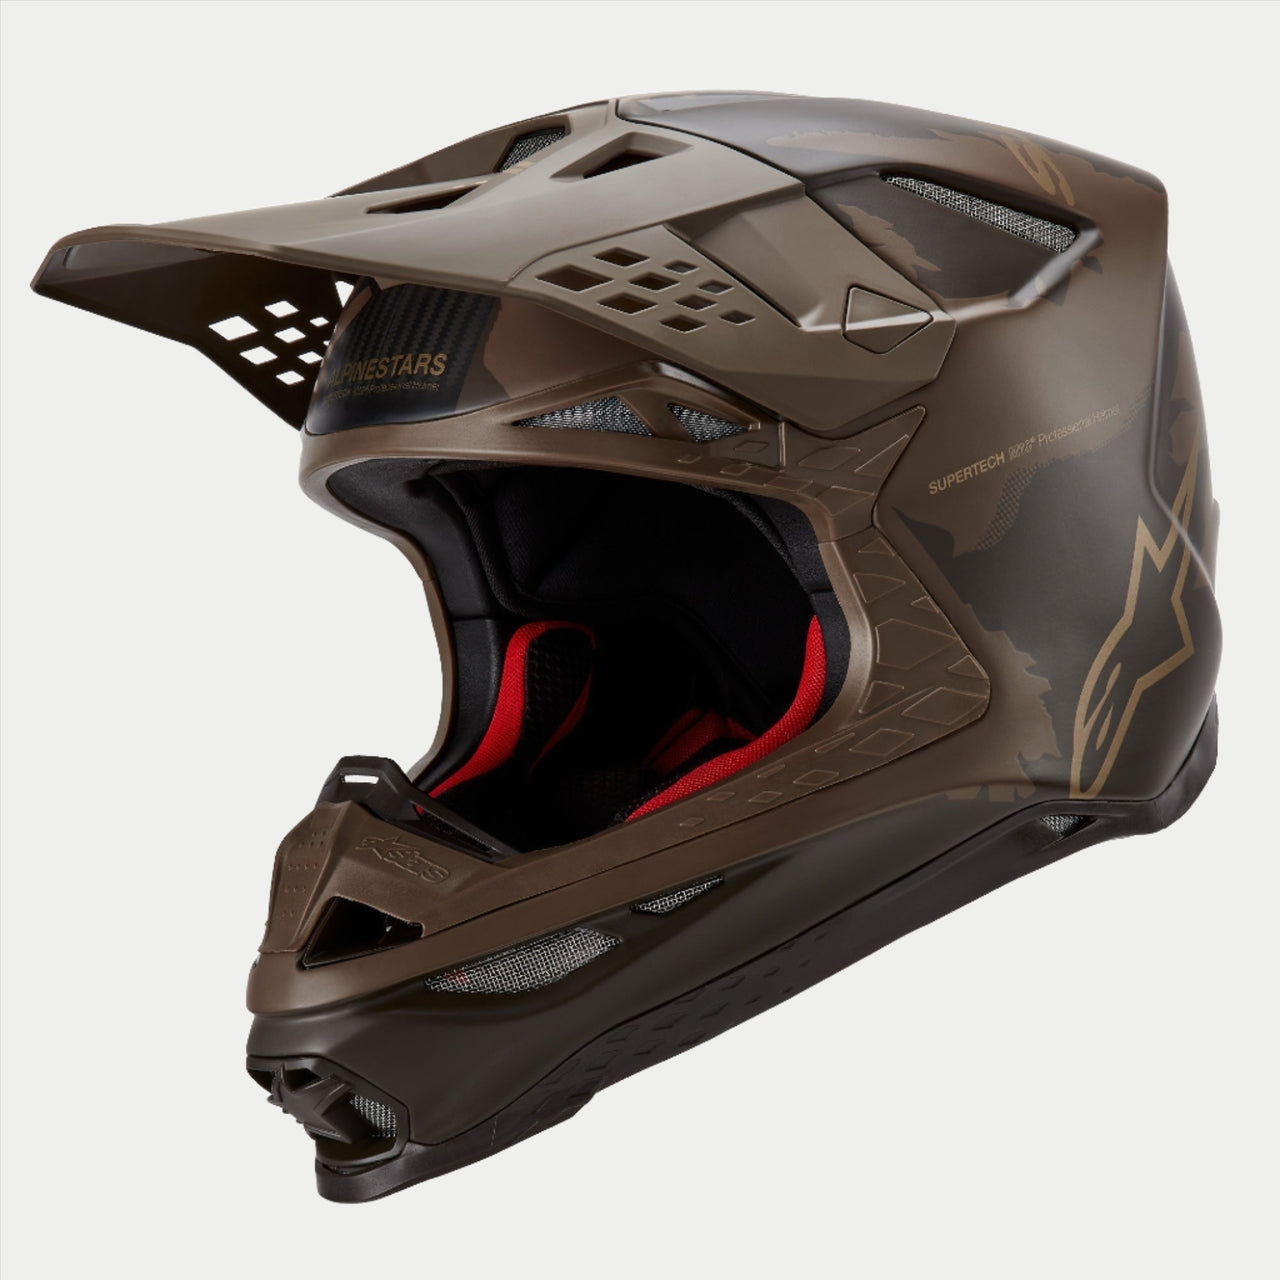 MX Helmets on Sale